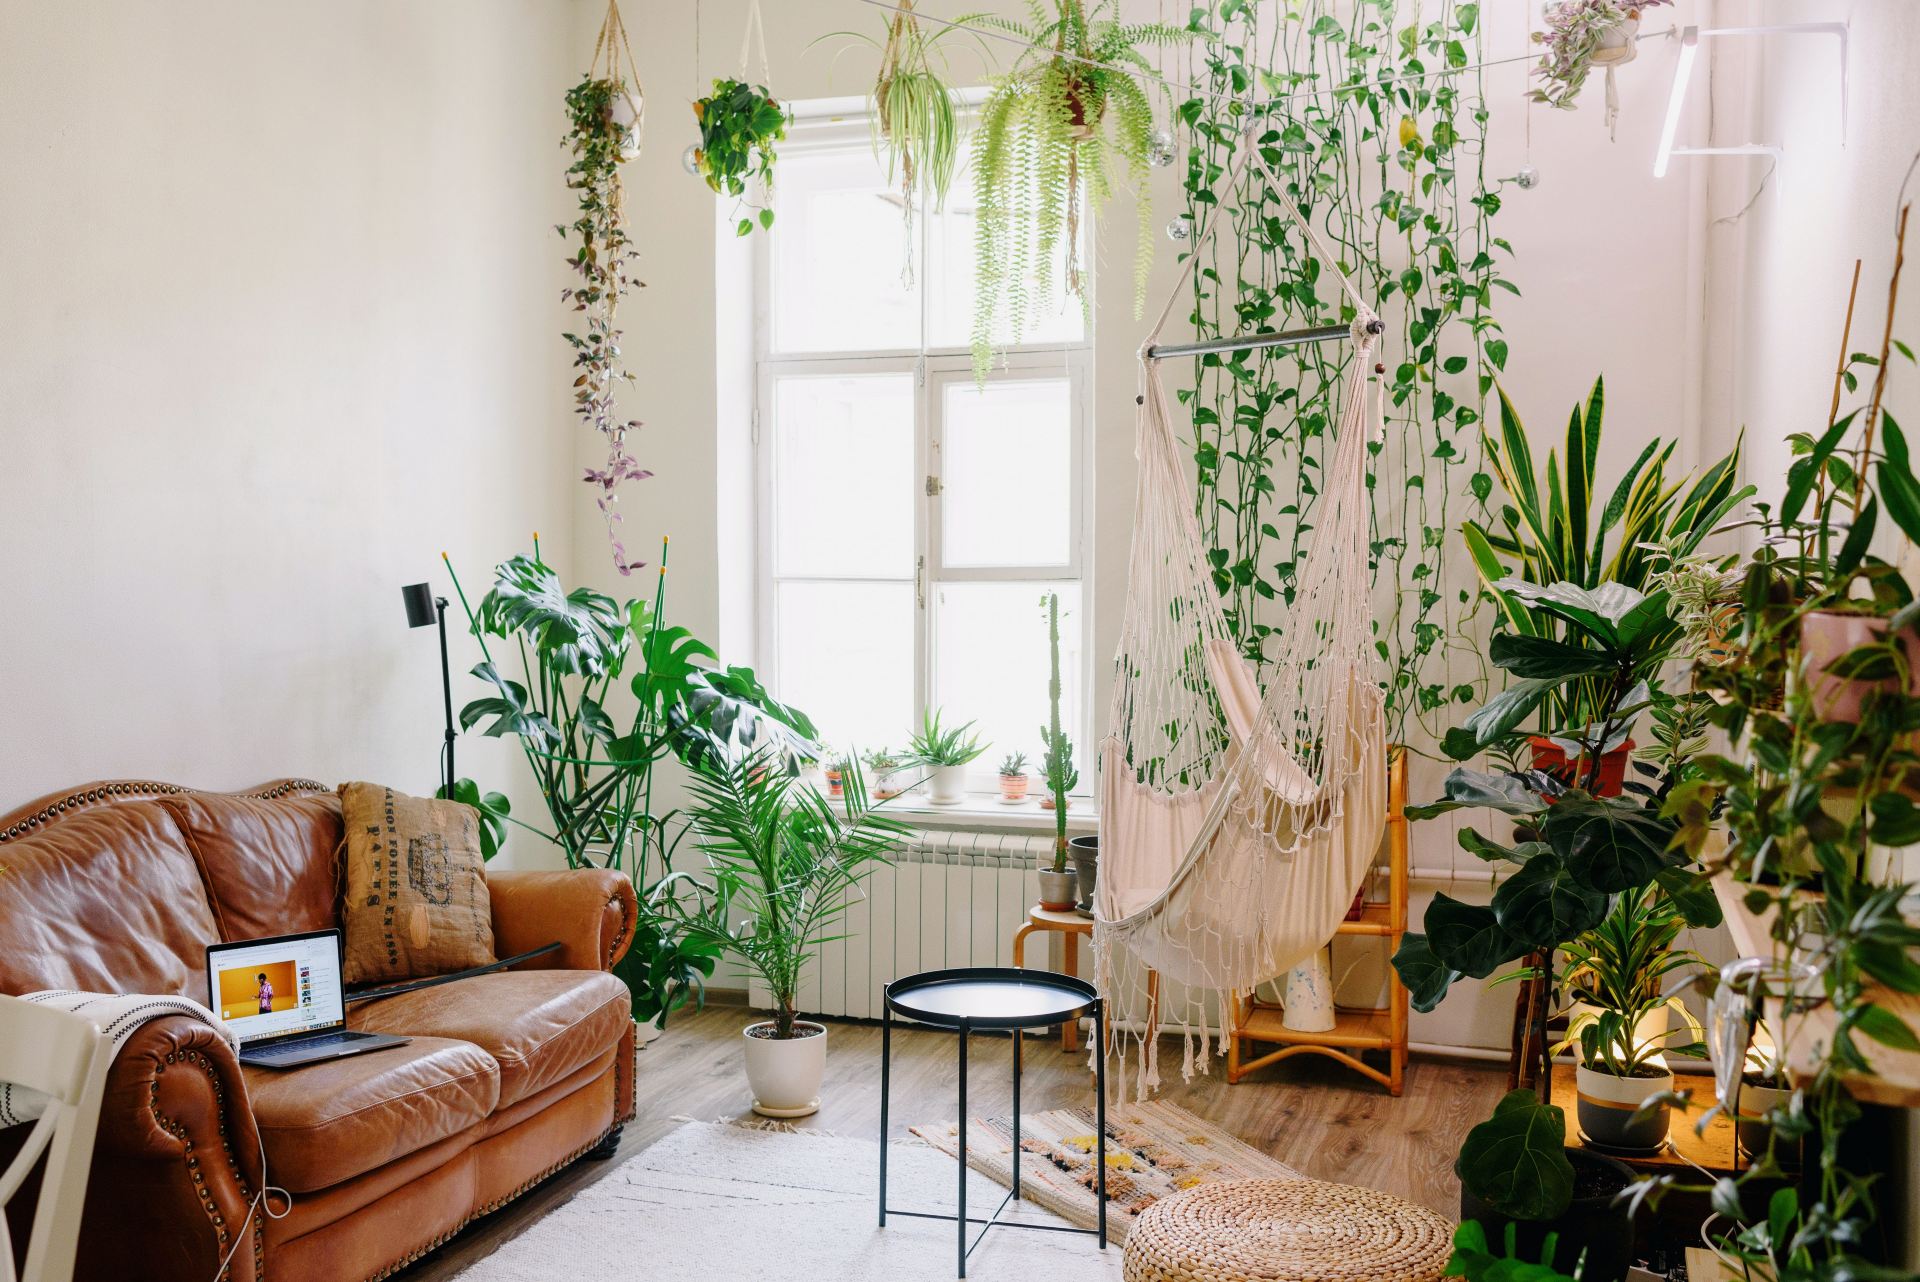 Sala com plantas: conheça 7 espécies e saiba como decorar